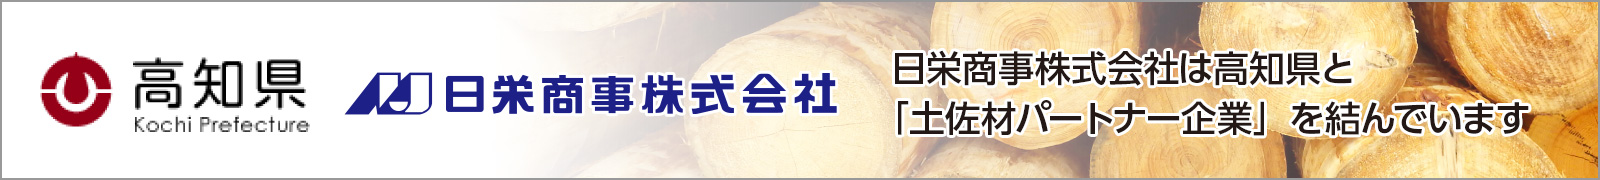 日栄商事株式会社は高知県と「土佐材パートナー企業」を結んでいます